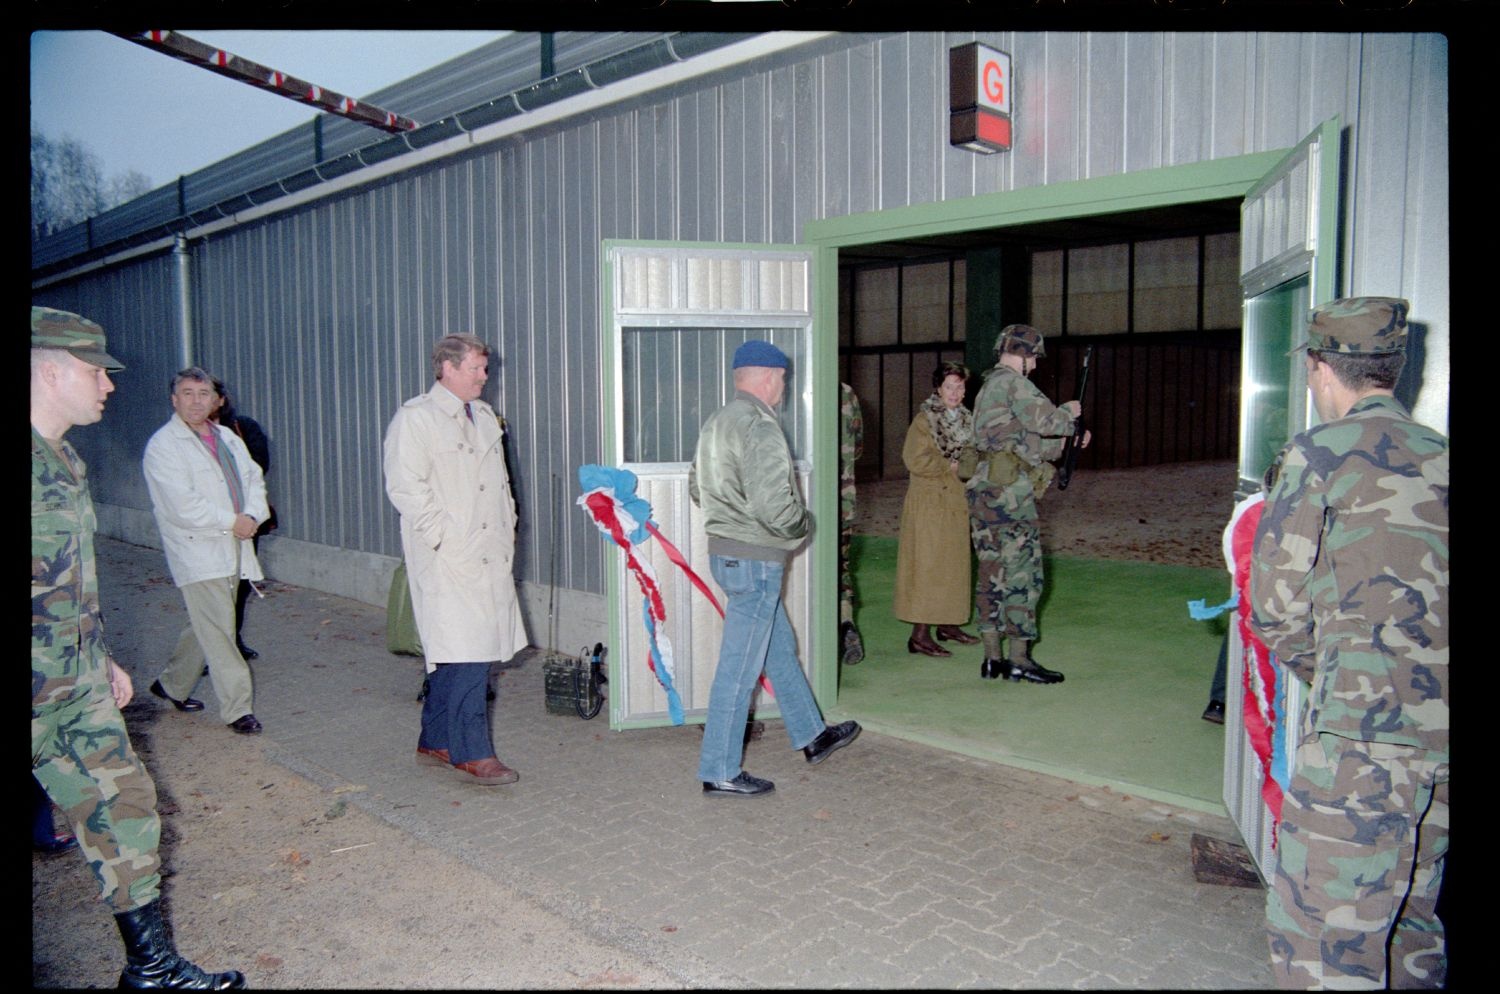 Fotografie: Eröffnung eines neuen Schießstands auf dem Schießplatz Rose Range der U.S. Army Berlin Brigade in Berlin-Wannsee (AlliiertenMuseum/U.S. Army Photograph Public Domain Mark)